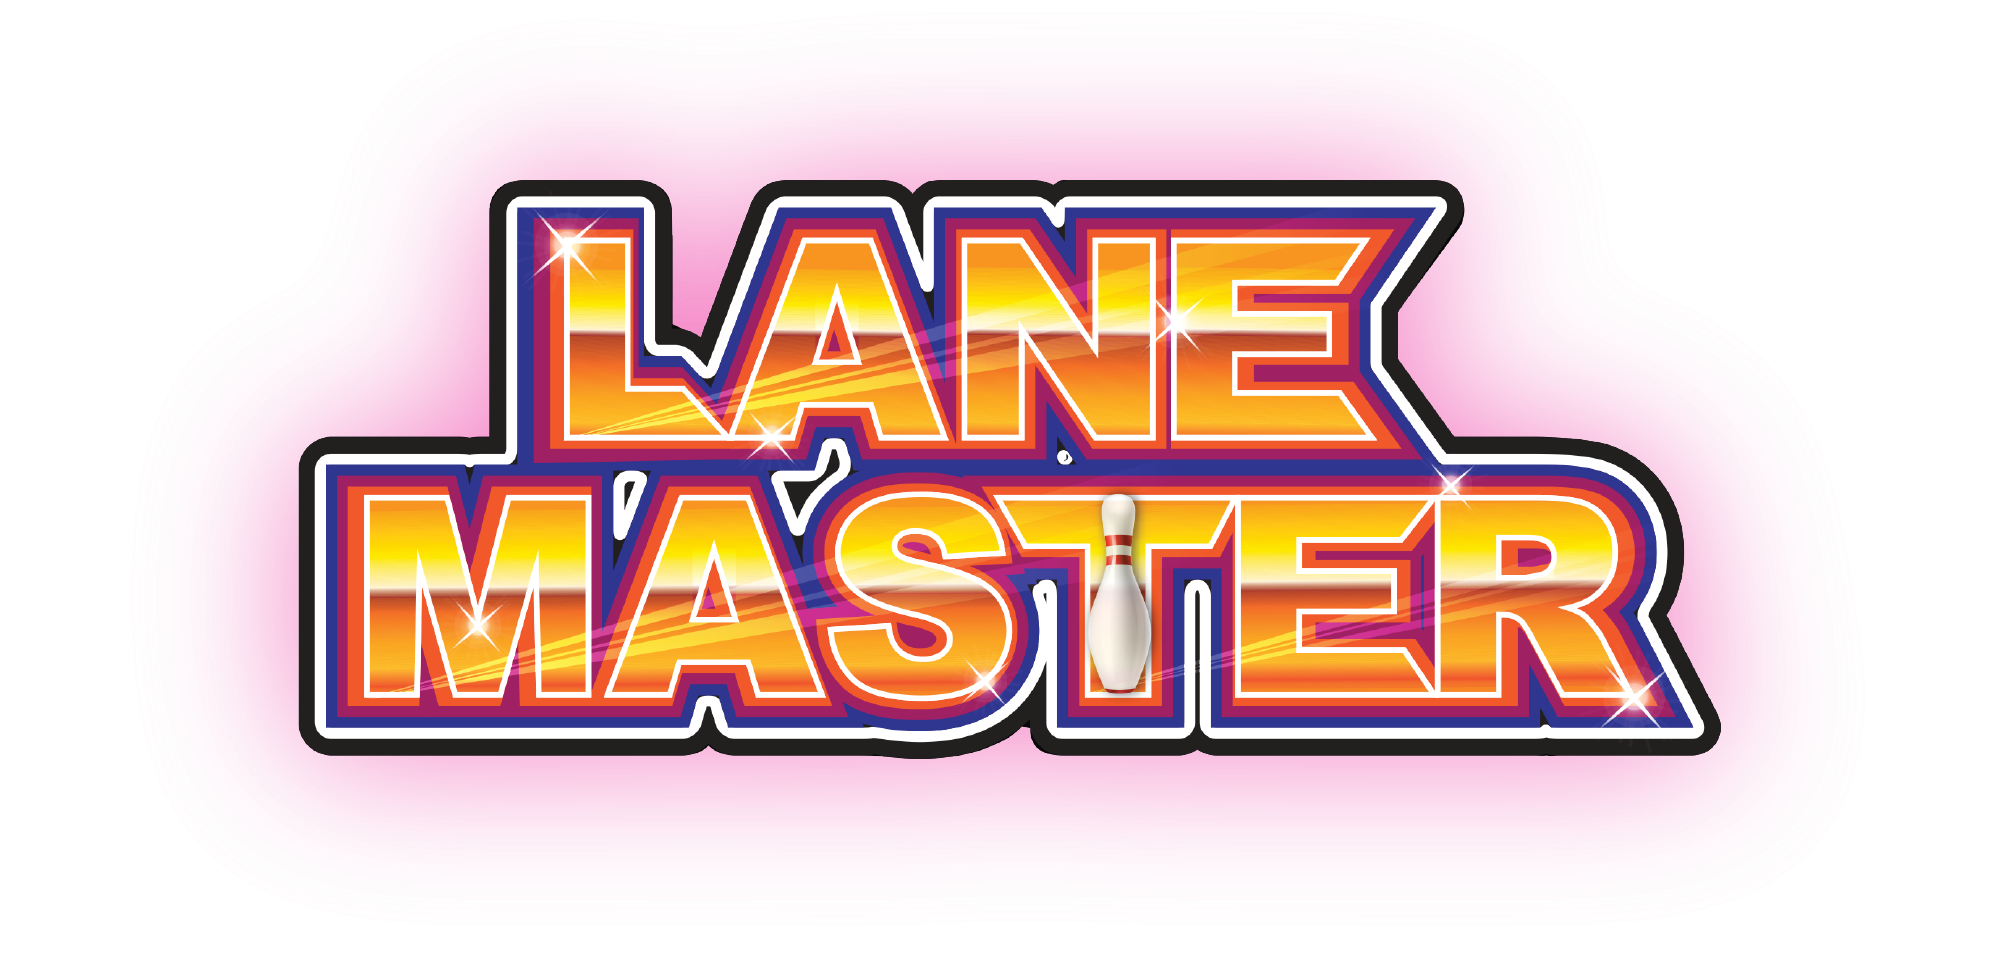 Lane Master